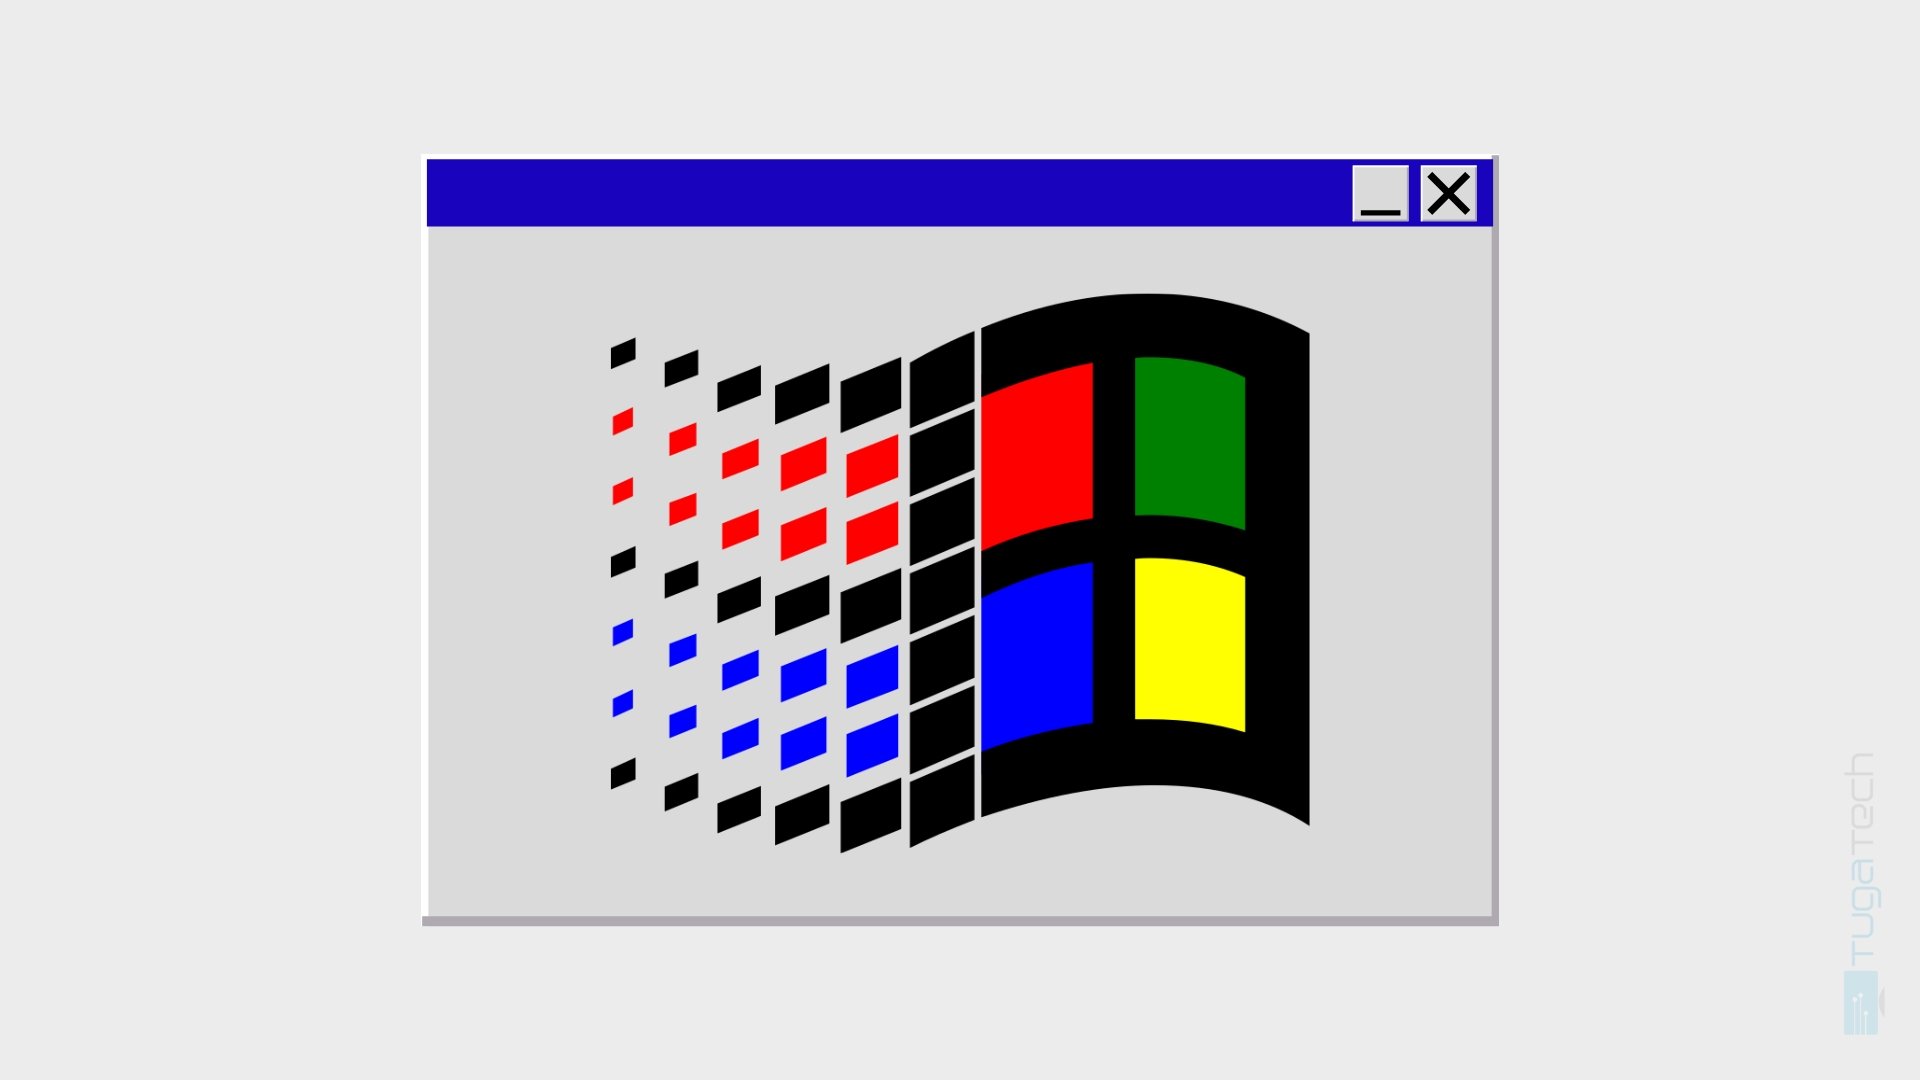 Projeto pretende colocar aplicações recentes no Windows 95